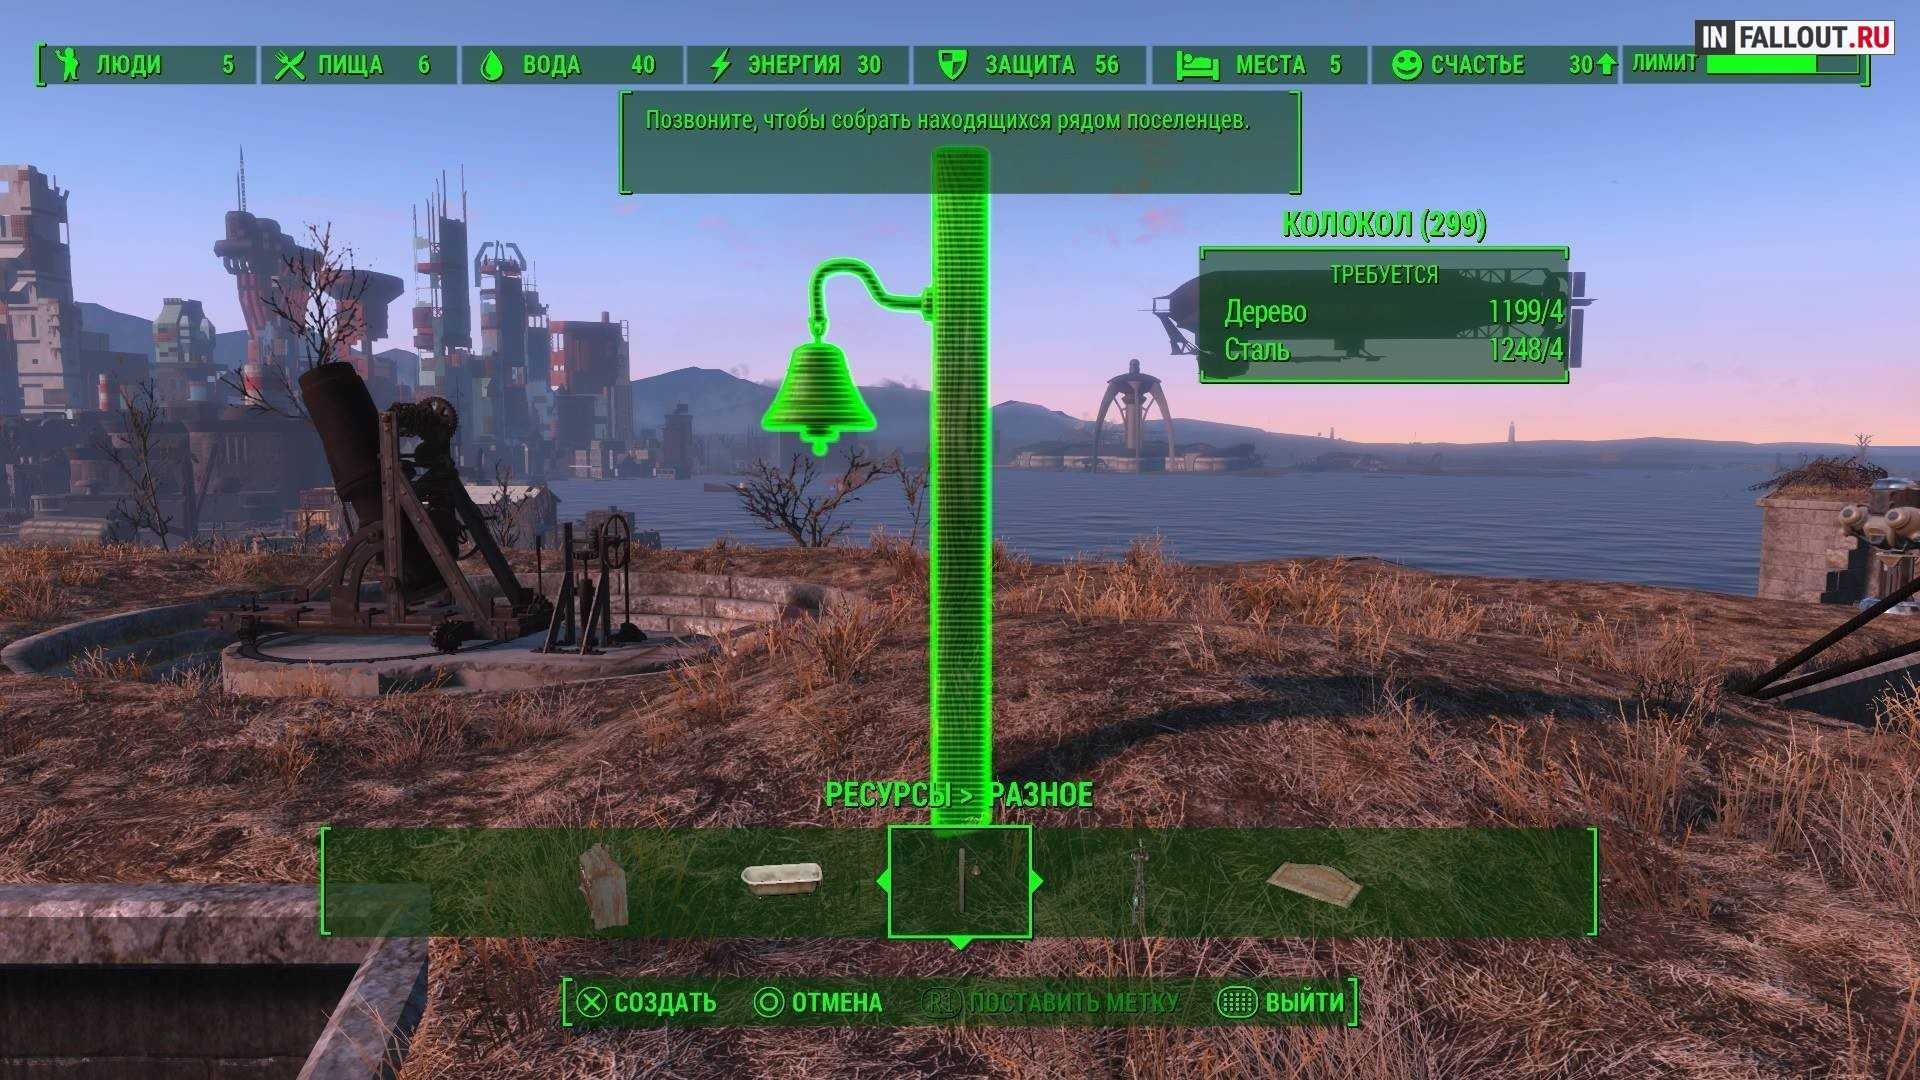 Fallout 4 больше поселенцев фото 107